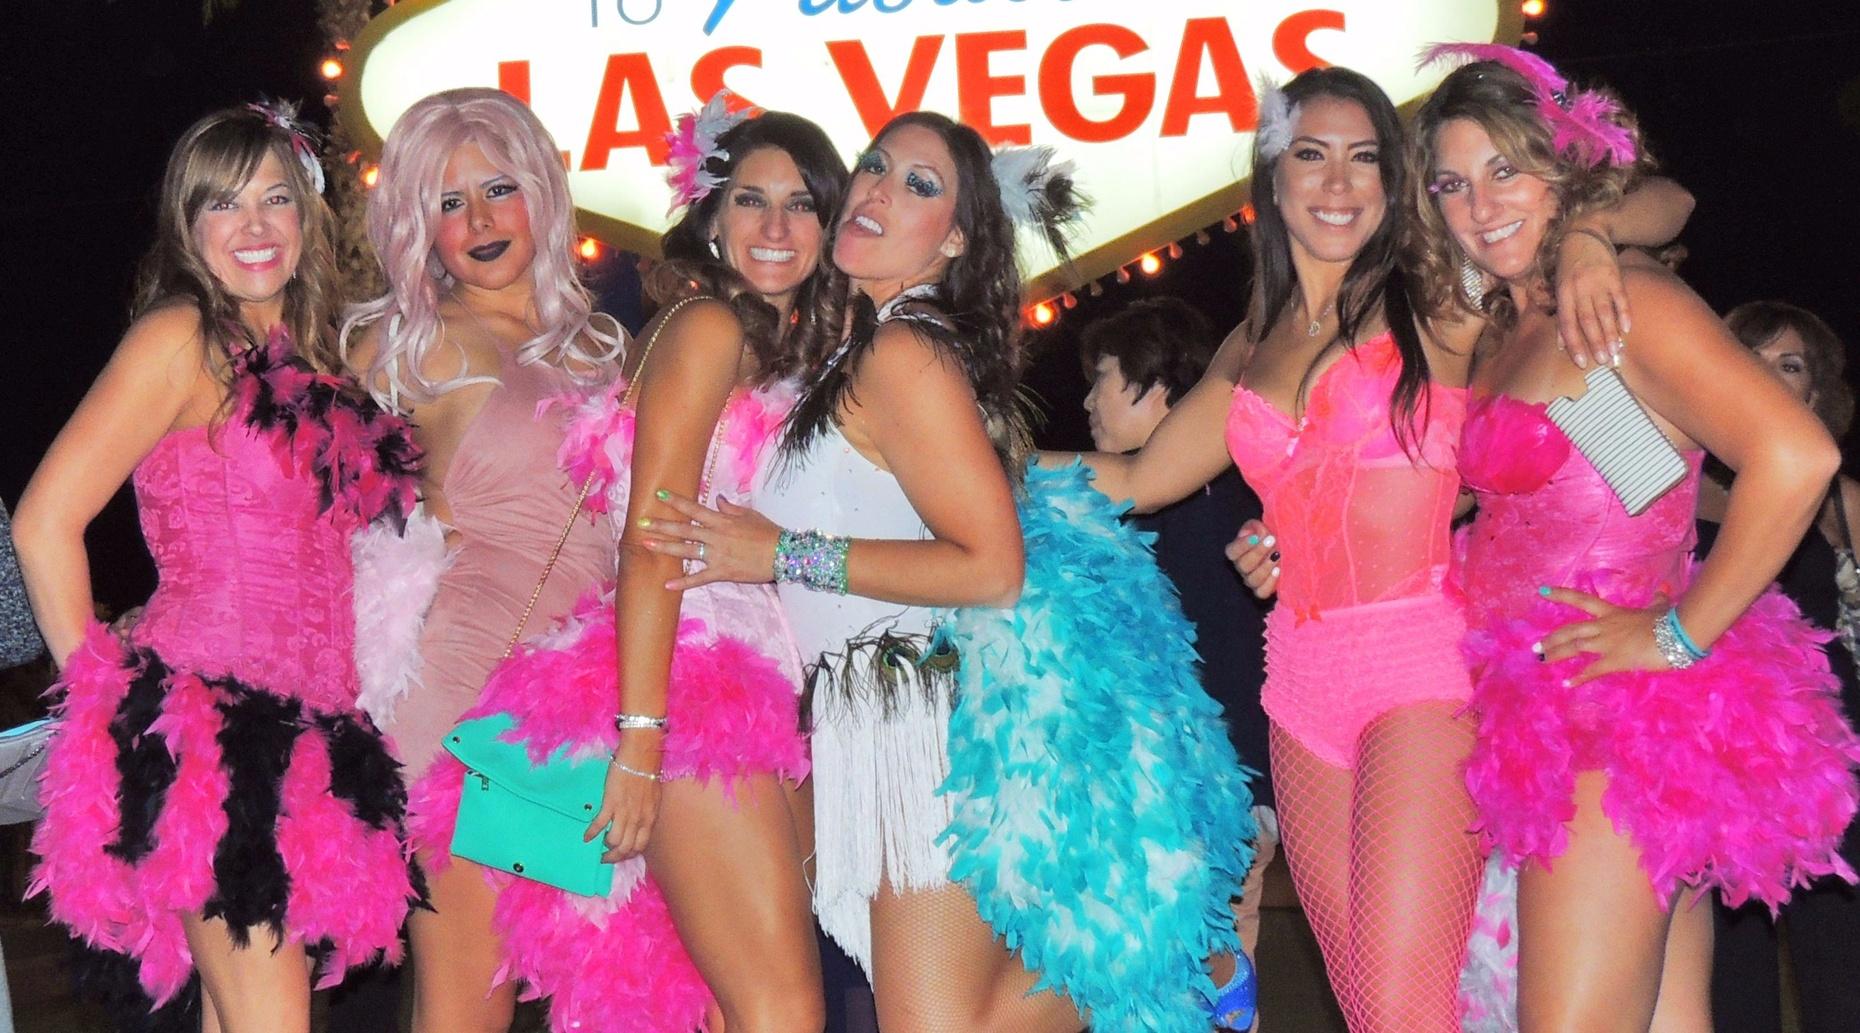 Guided Nightclub Tour of the Las Vegas Strip